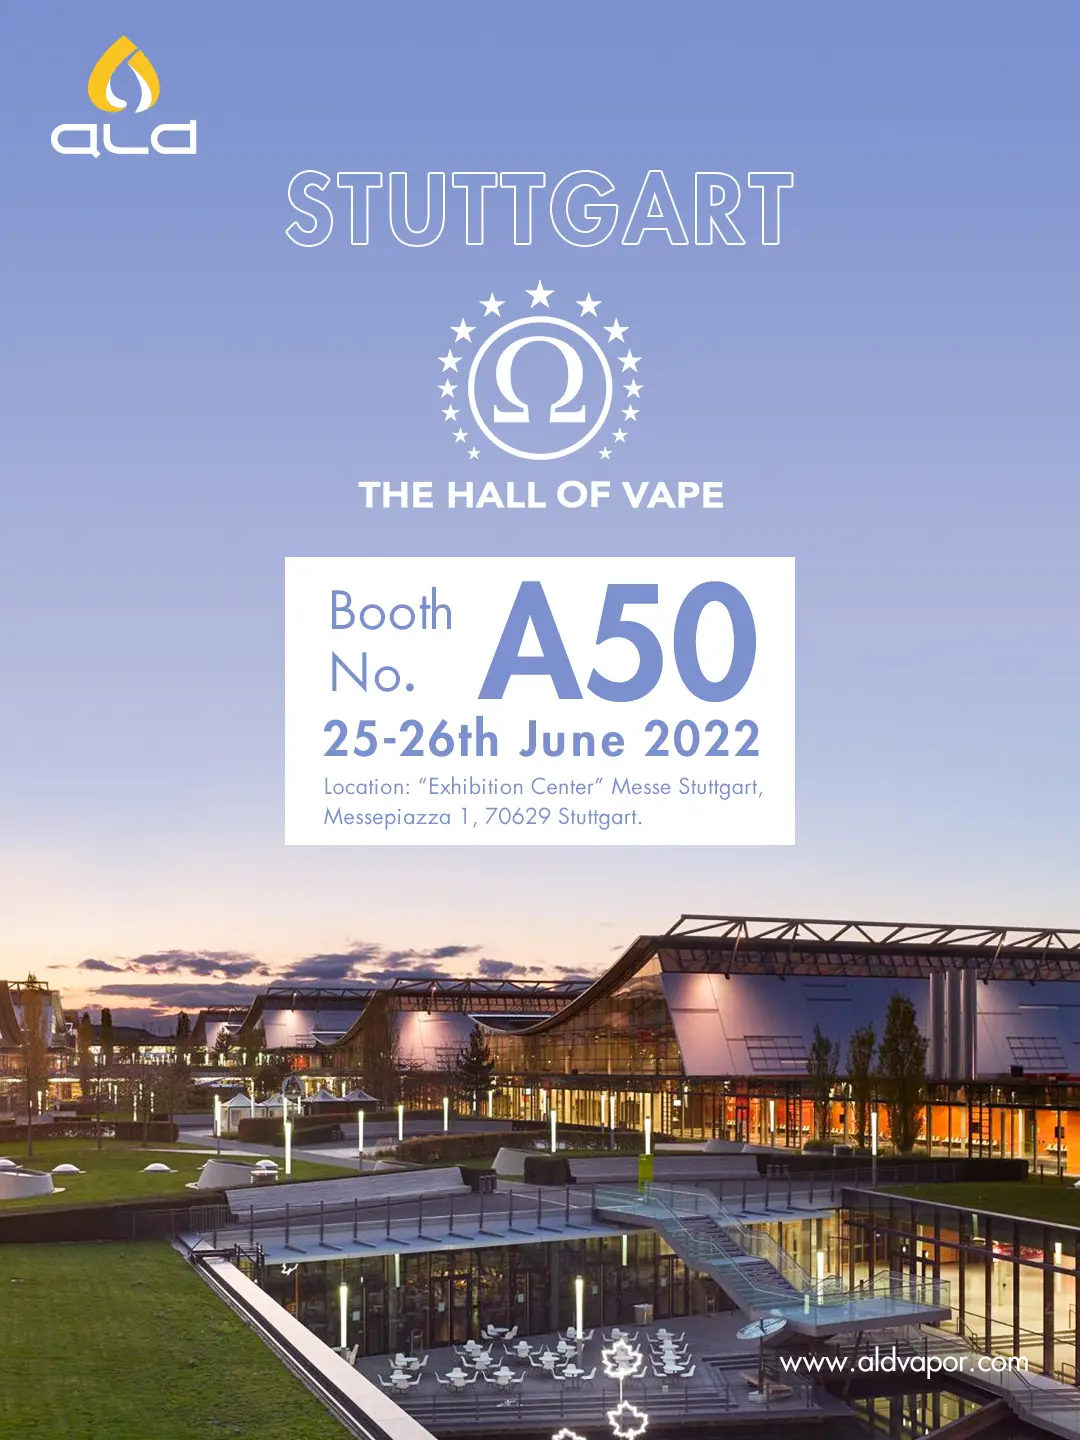 ald-stuttgart-2022-banner-2